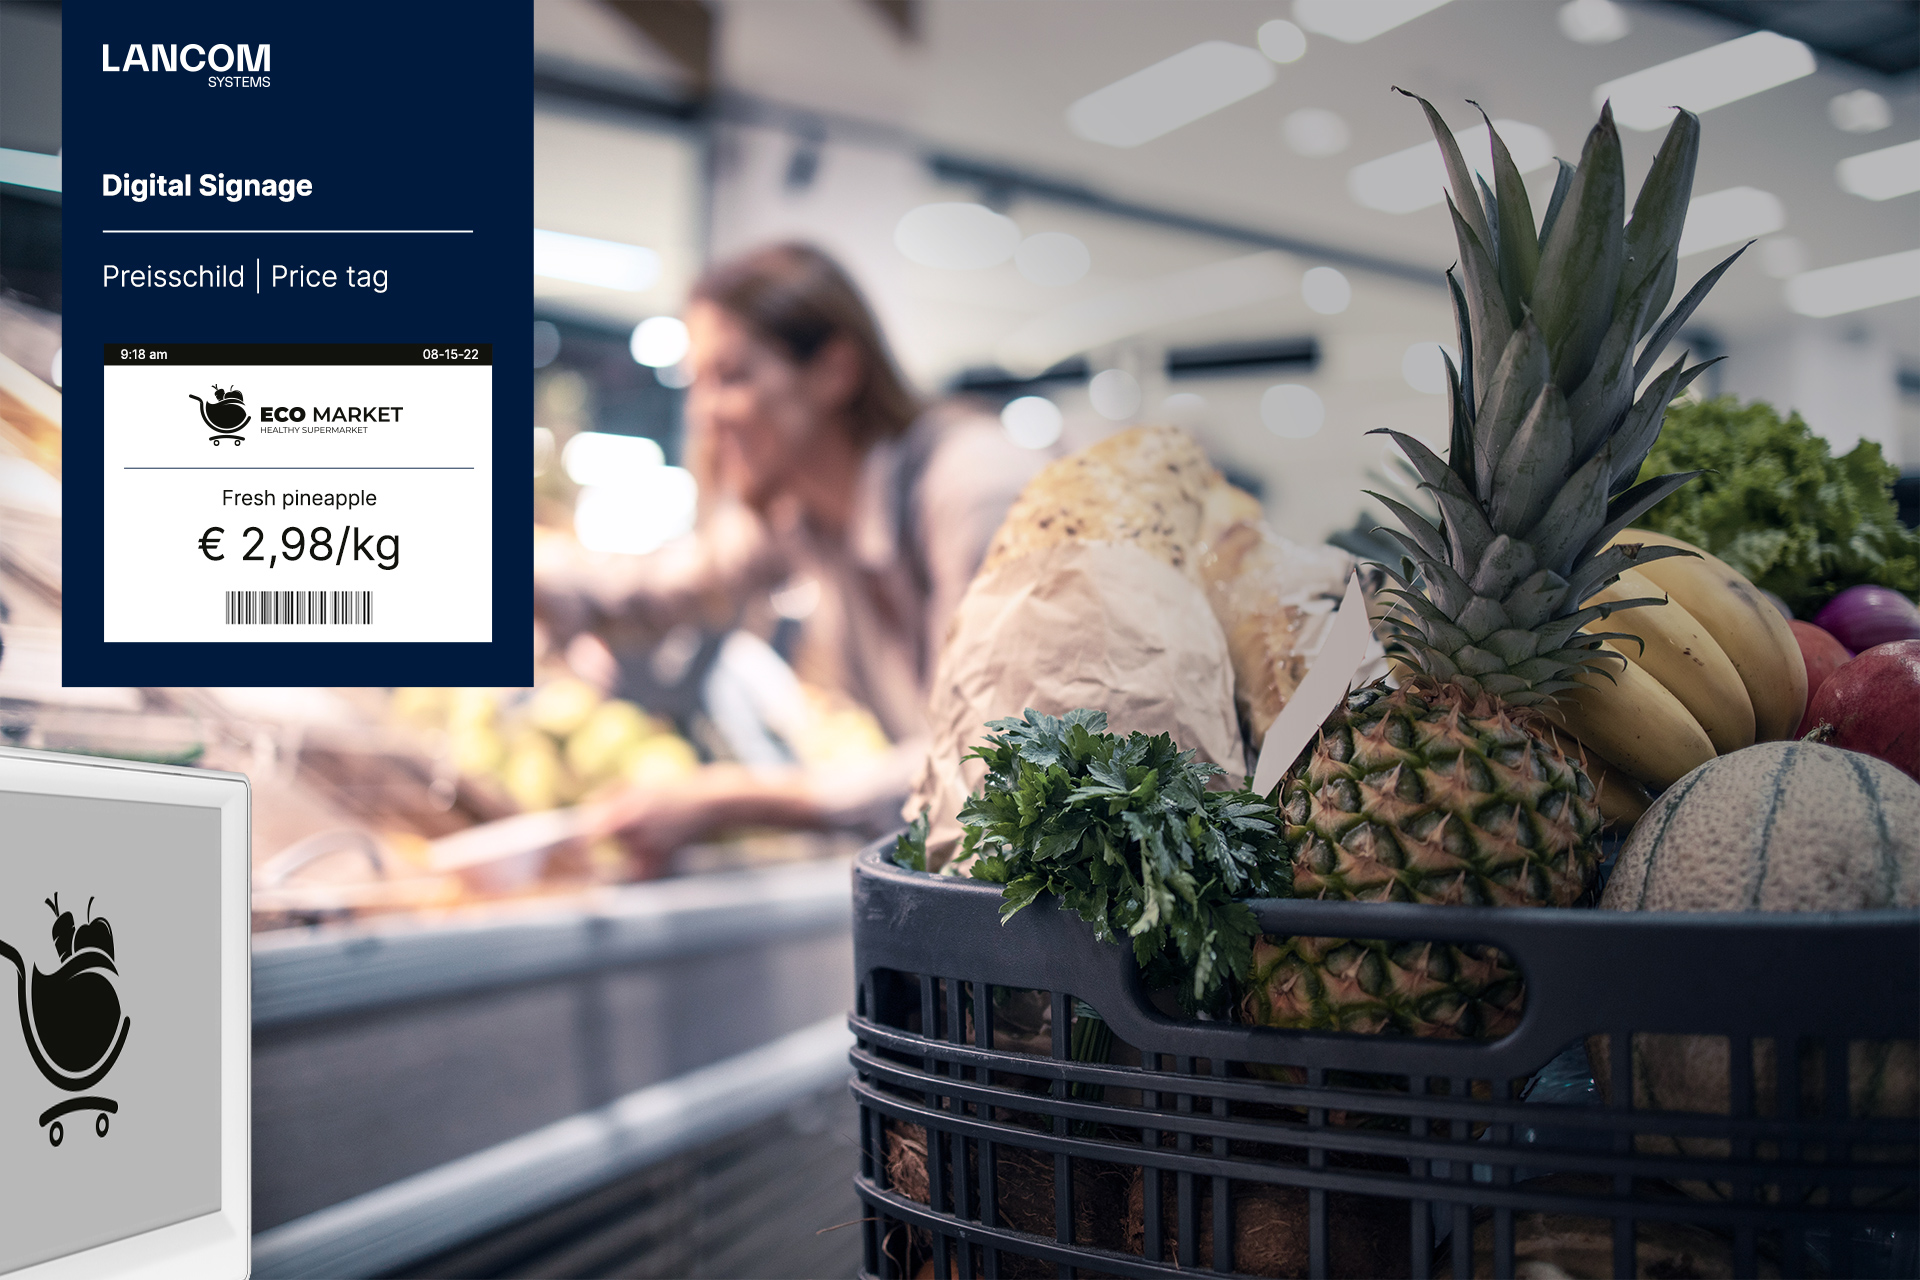 Moderner Supermarkt mit digitalem Preisschild an Gemüseregal inklusive Echtzeit-Preis und Barcode